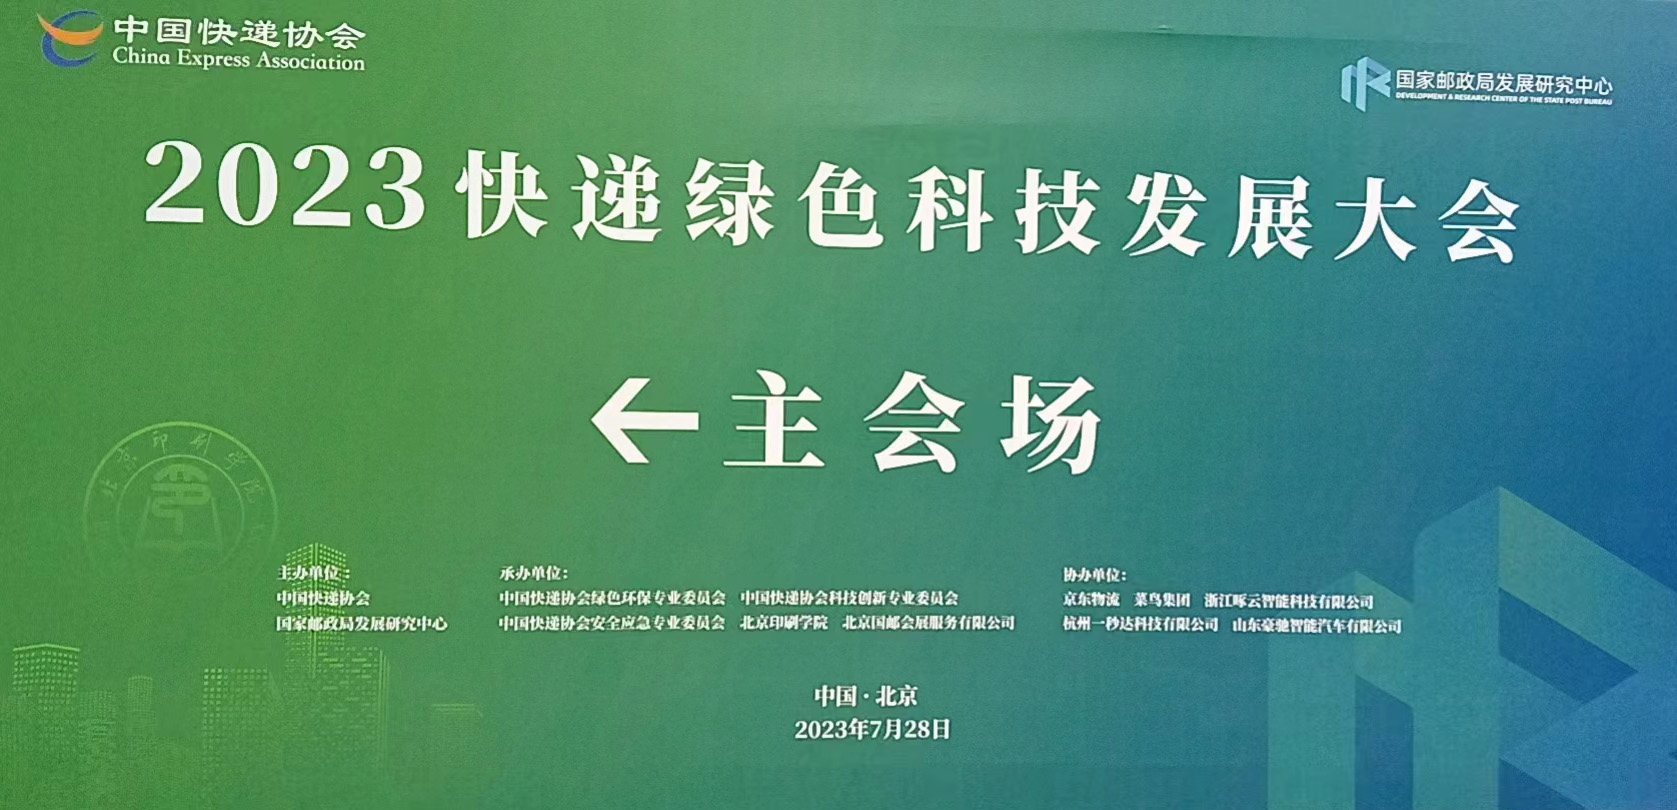 北京快递绿色科技发展大会